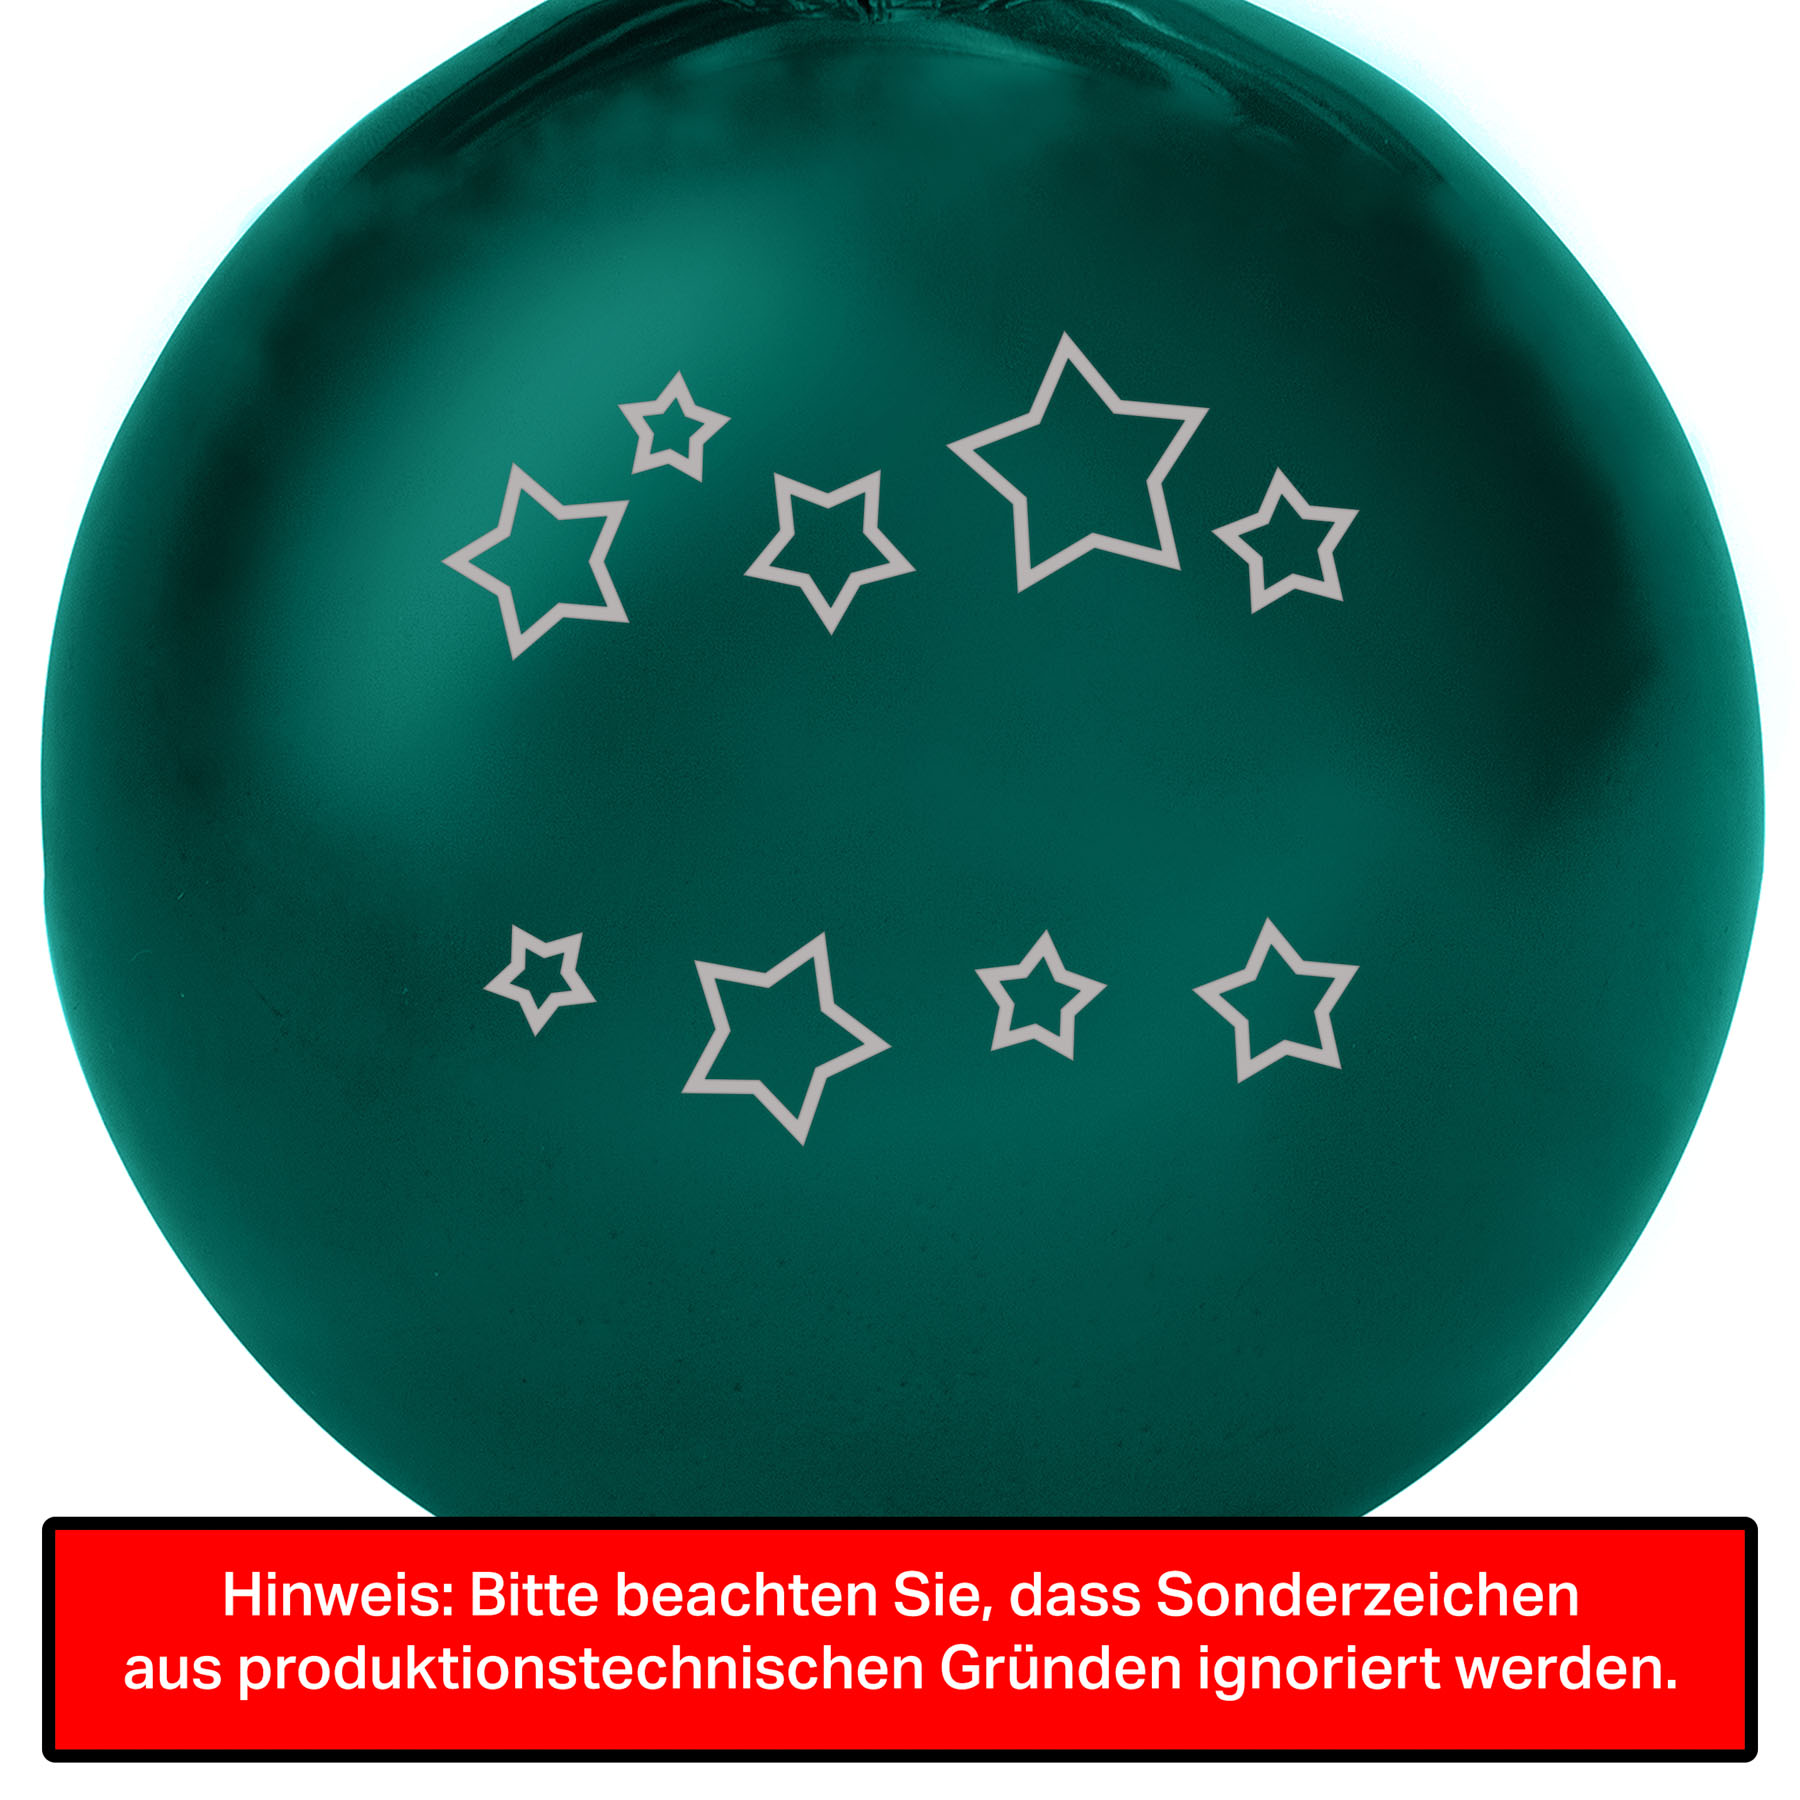 Weihnachtsbaumkugel aus Glas (glänzend) inklusive Wunschtextgravur & Sternen